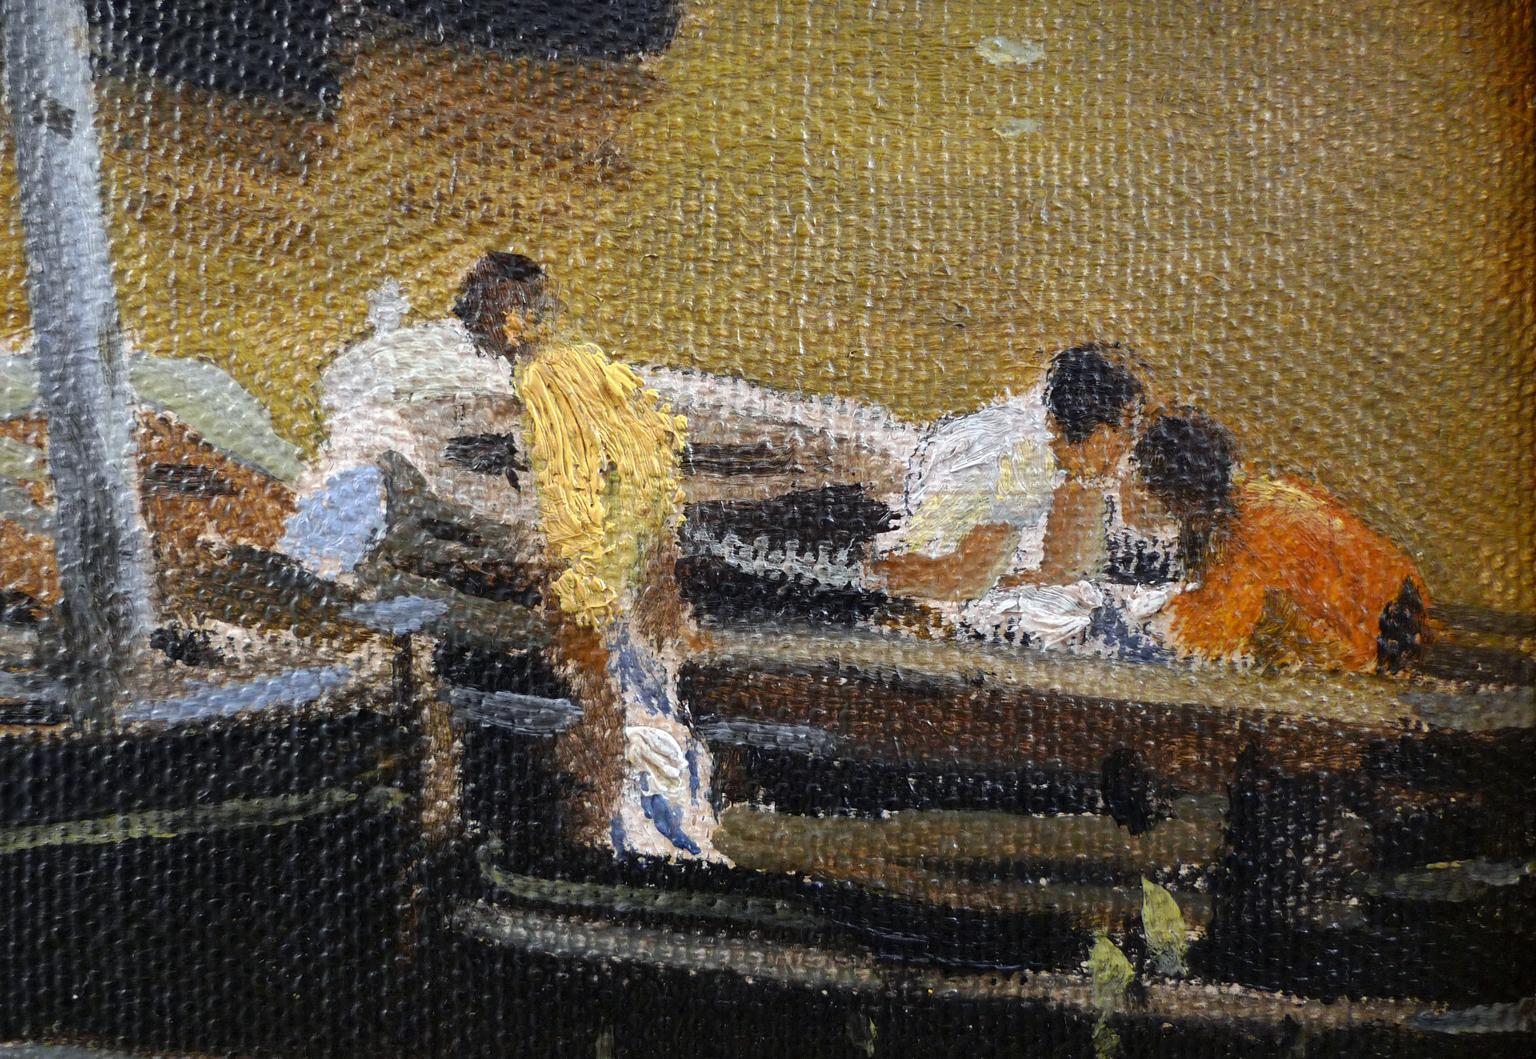 « Preparing for fishing », huile sur toile du XIXe siècle d'E. Martnez Cubells  - Réalisme Painting par Enrique Martinez Cubells y Ruiz